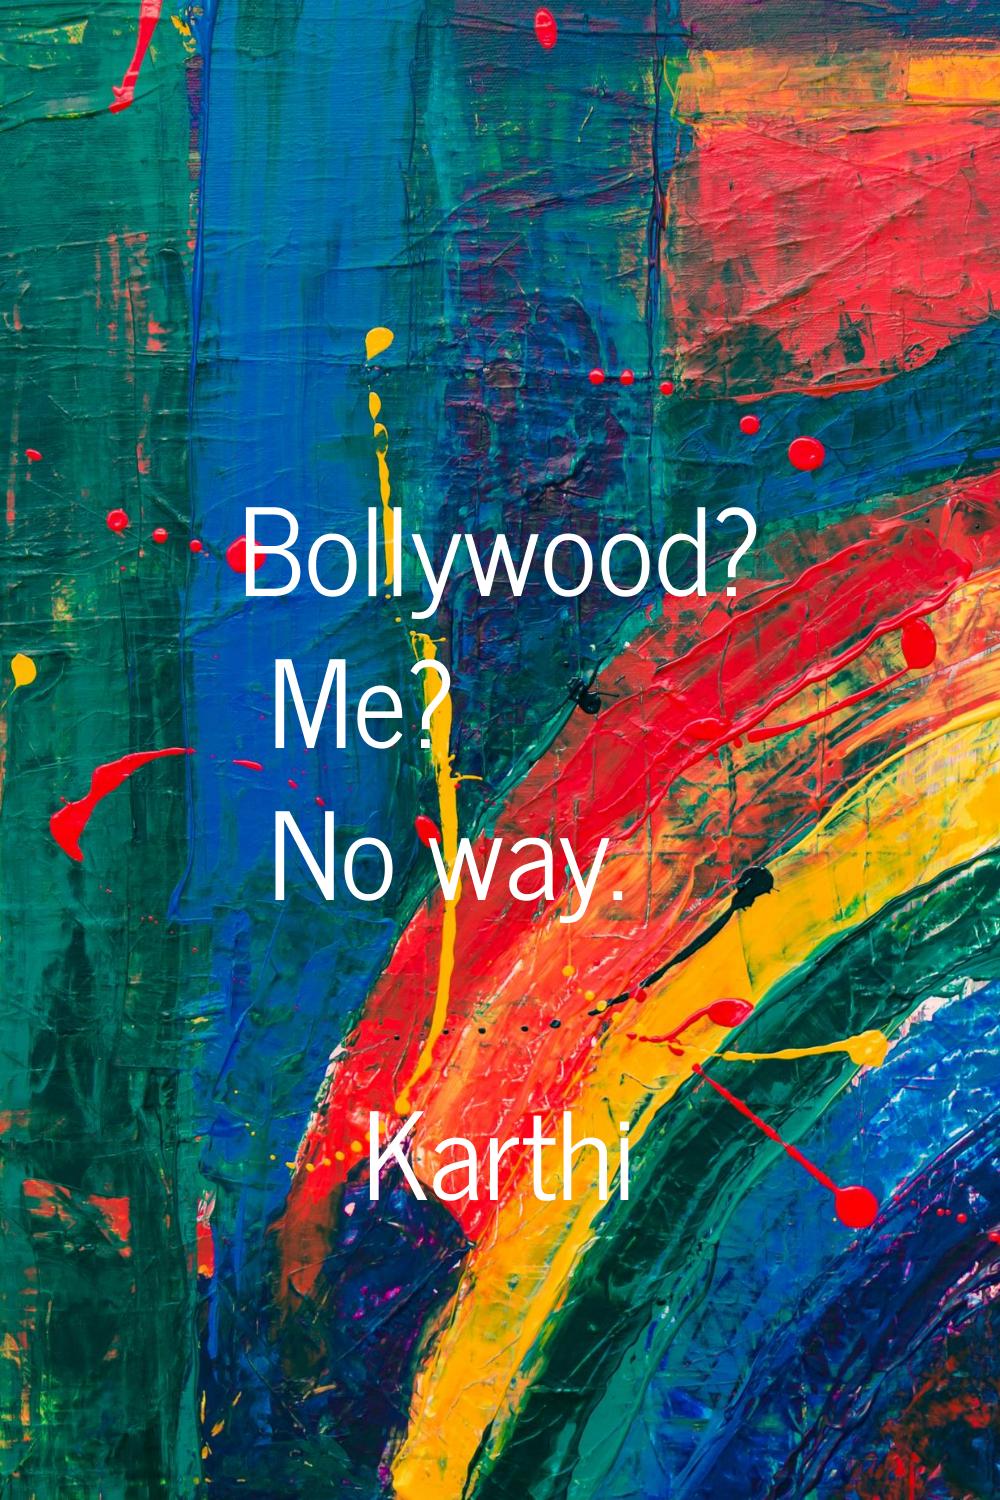 Bollywood? Me? No way.